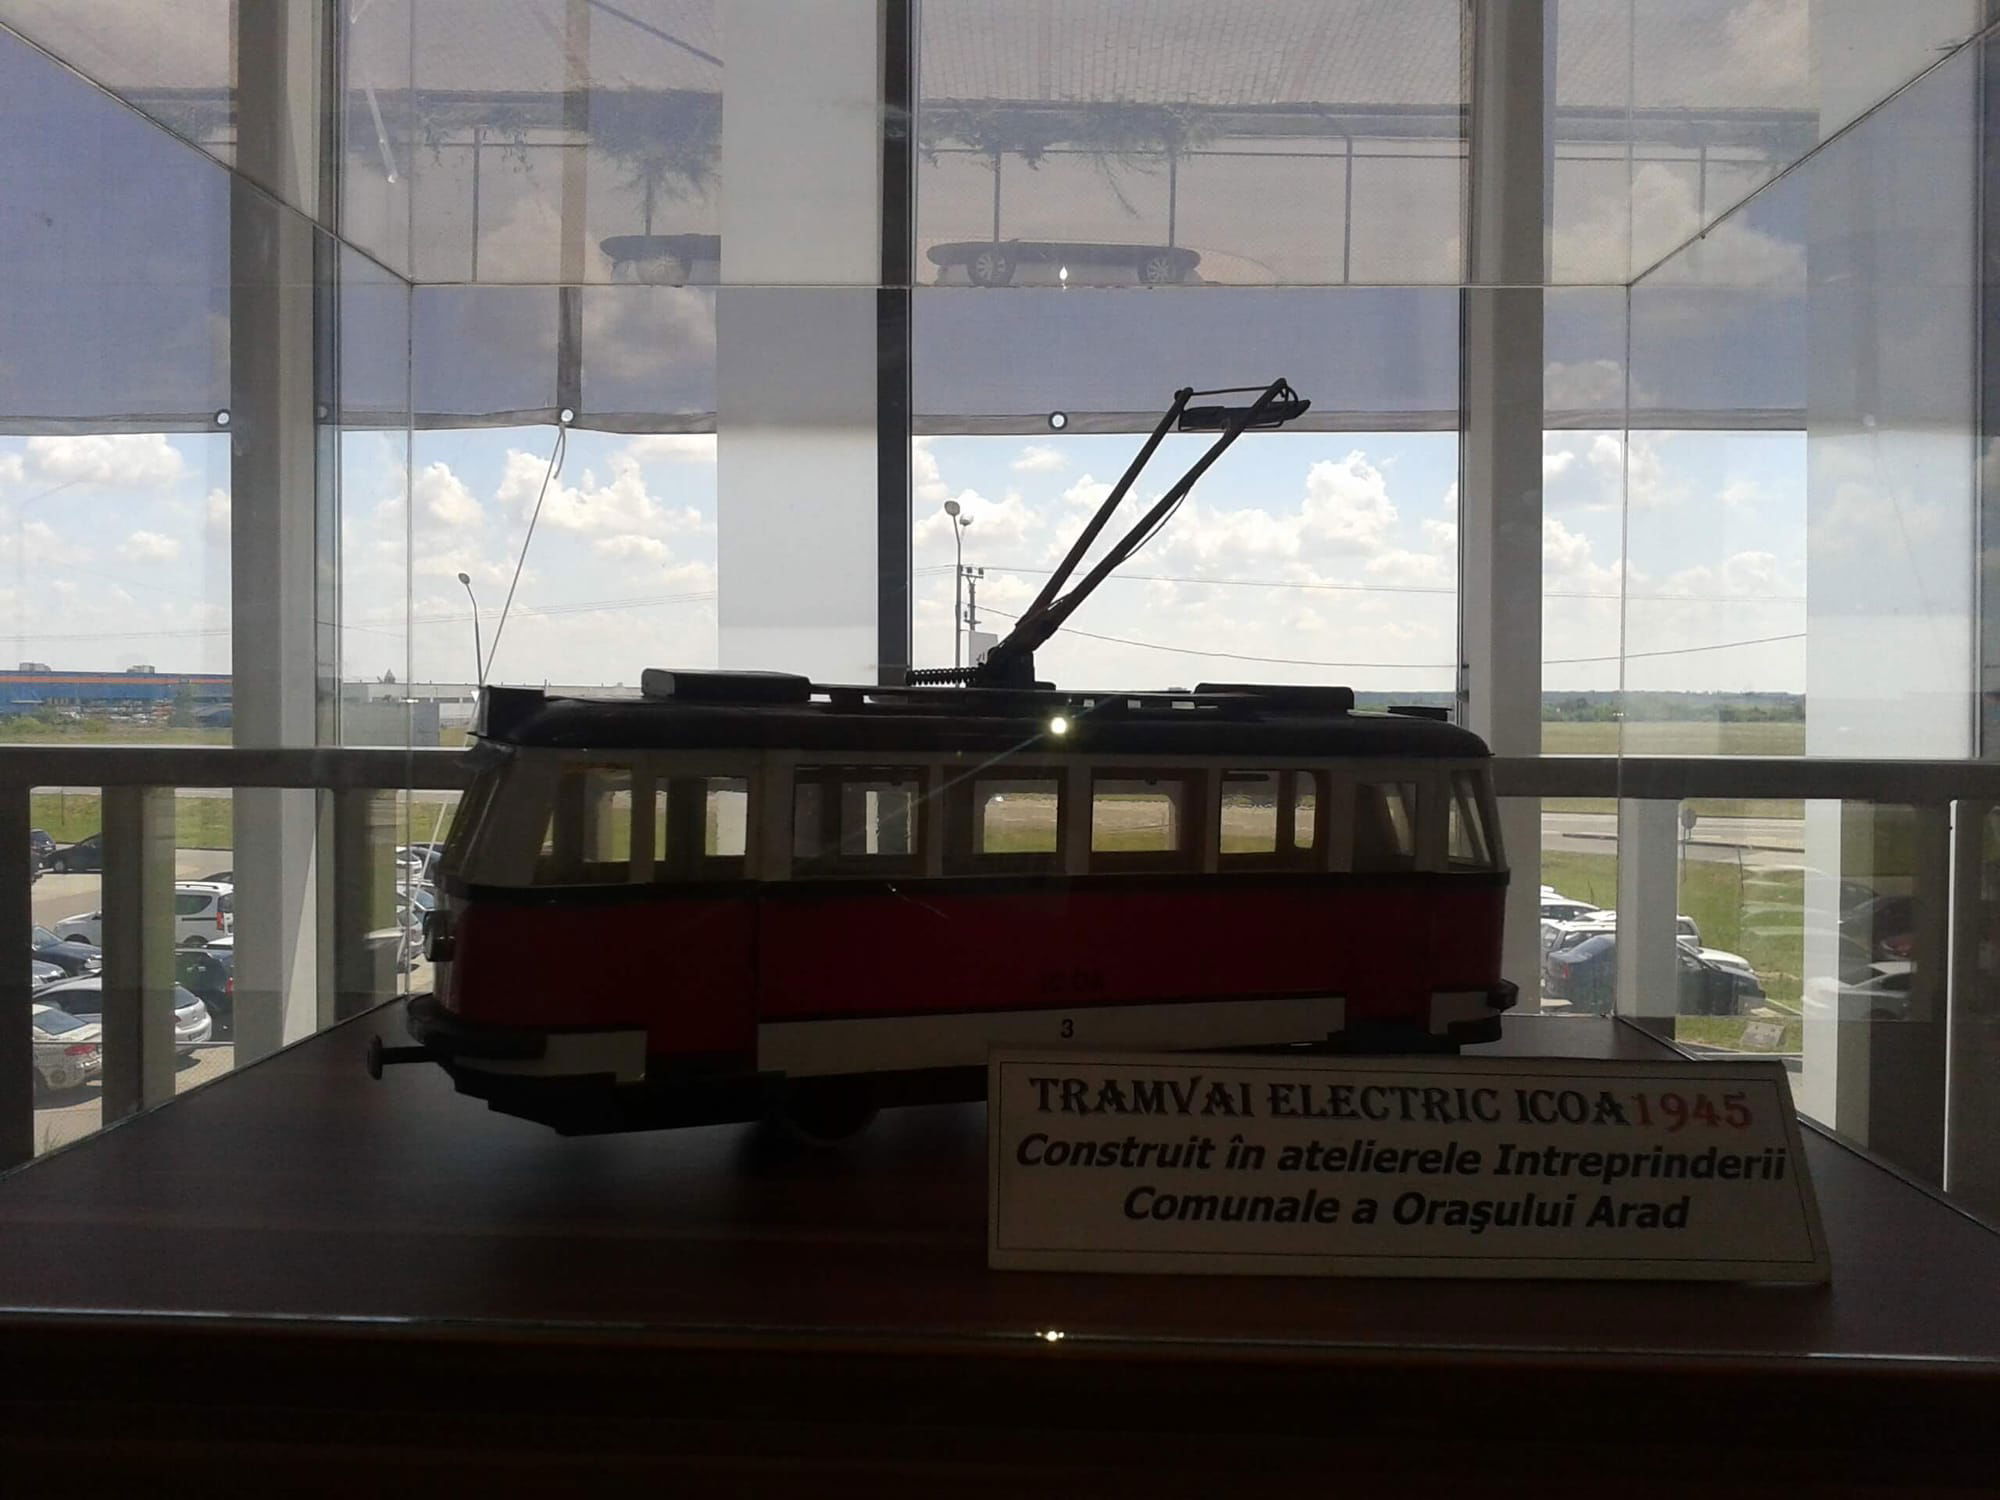 Tramvai electric construit la Intreprinderea Comunală a Orașului Arad în 1945